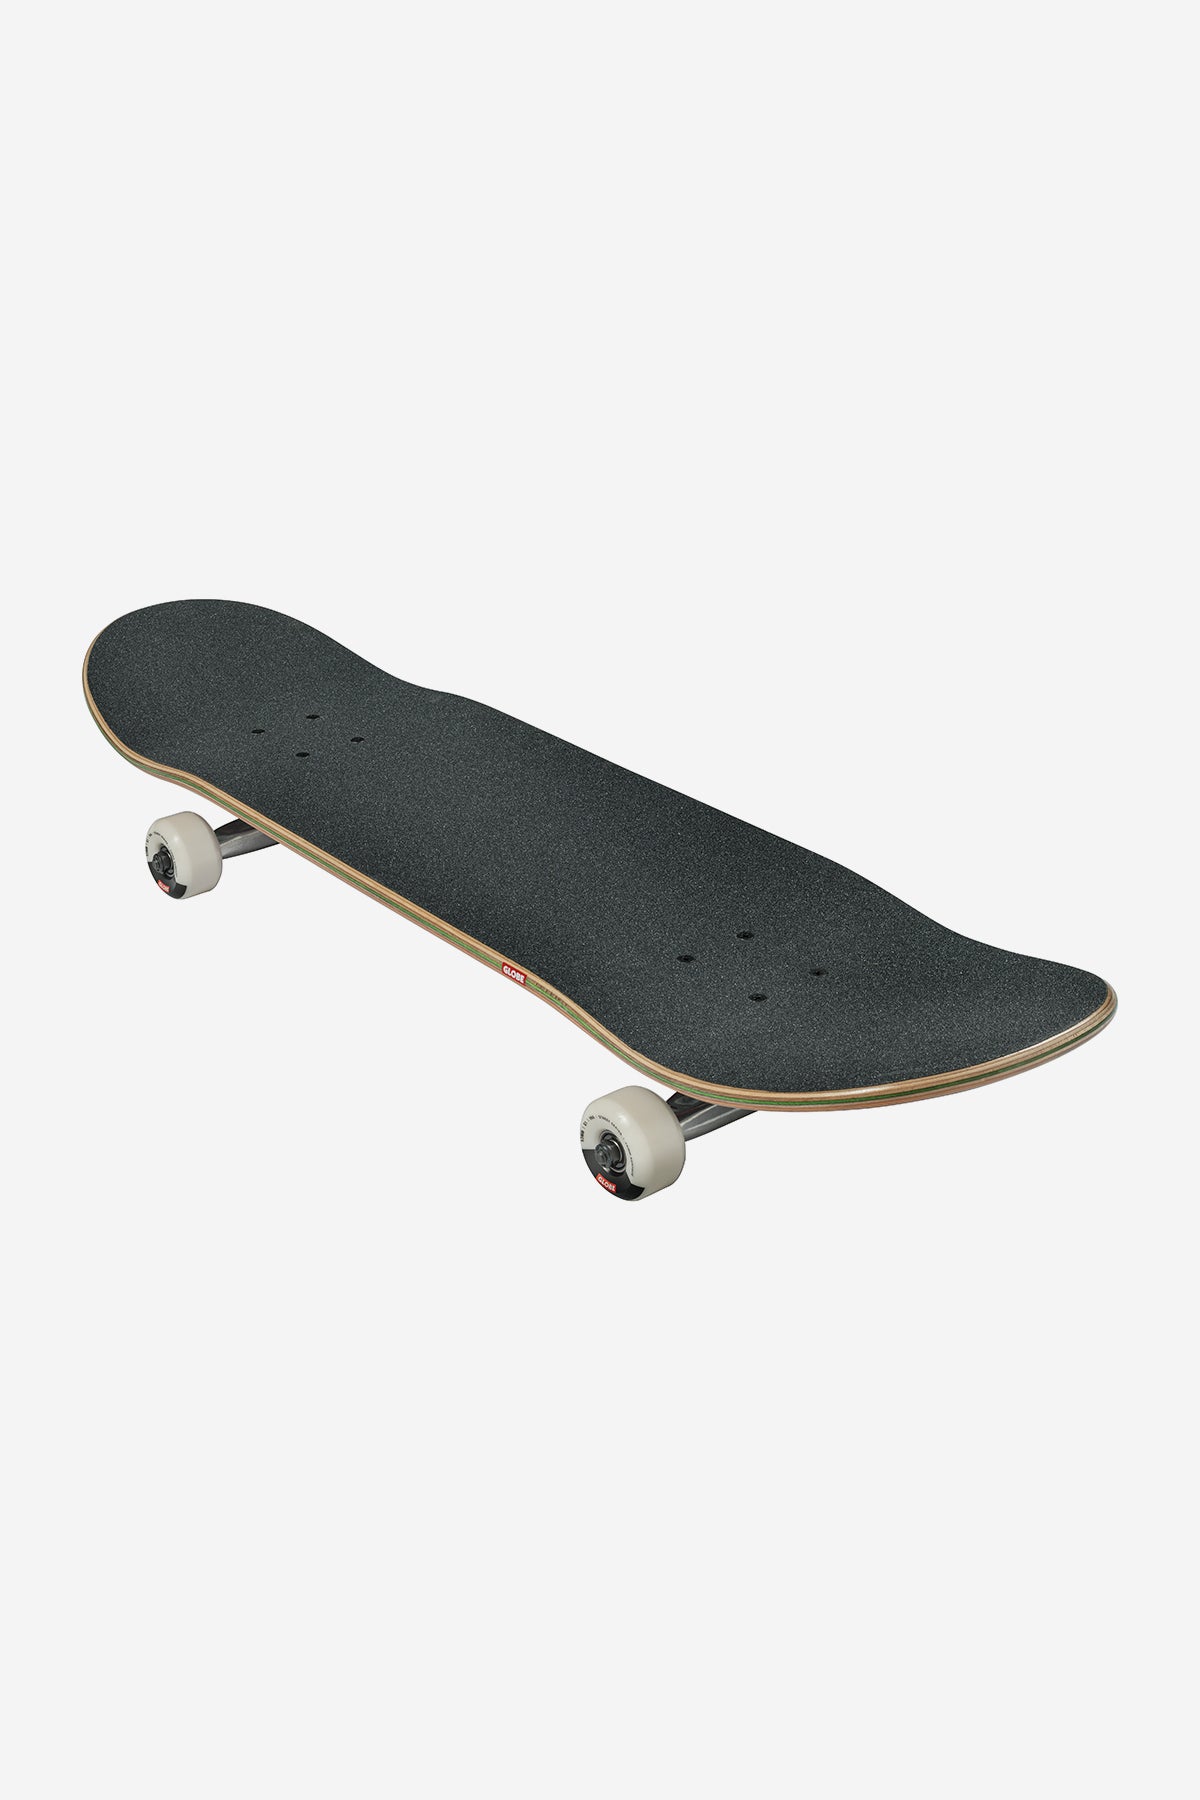 Globe - G1 Stack - Daydream - 8,25" Komplett Skateboard